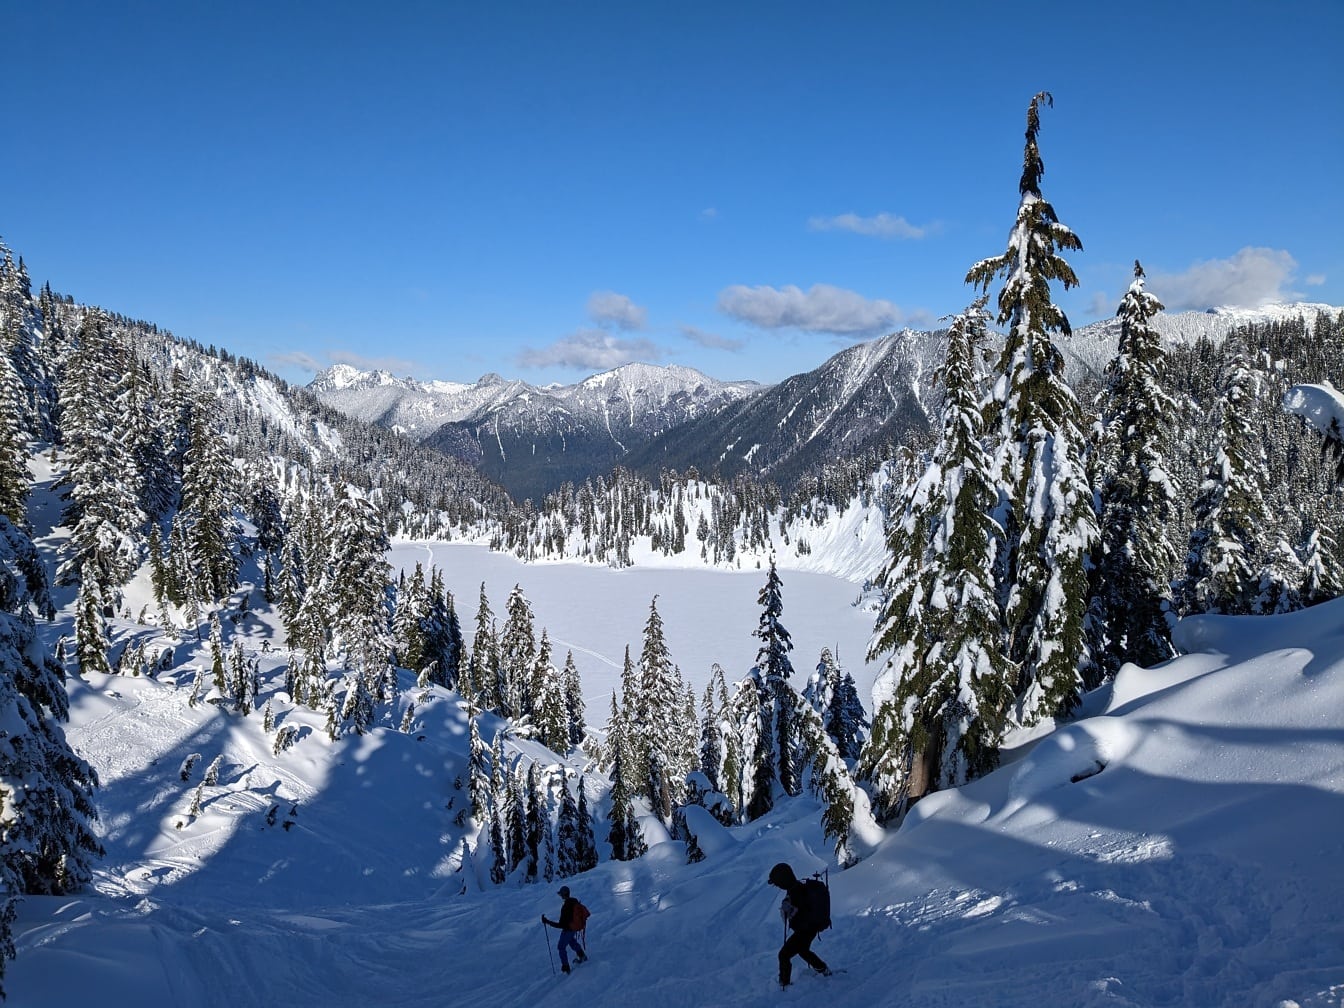 Kış macerasında karlı dağ yamacında kayakçılar